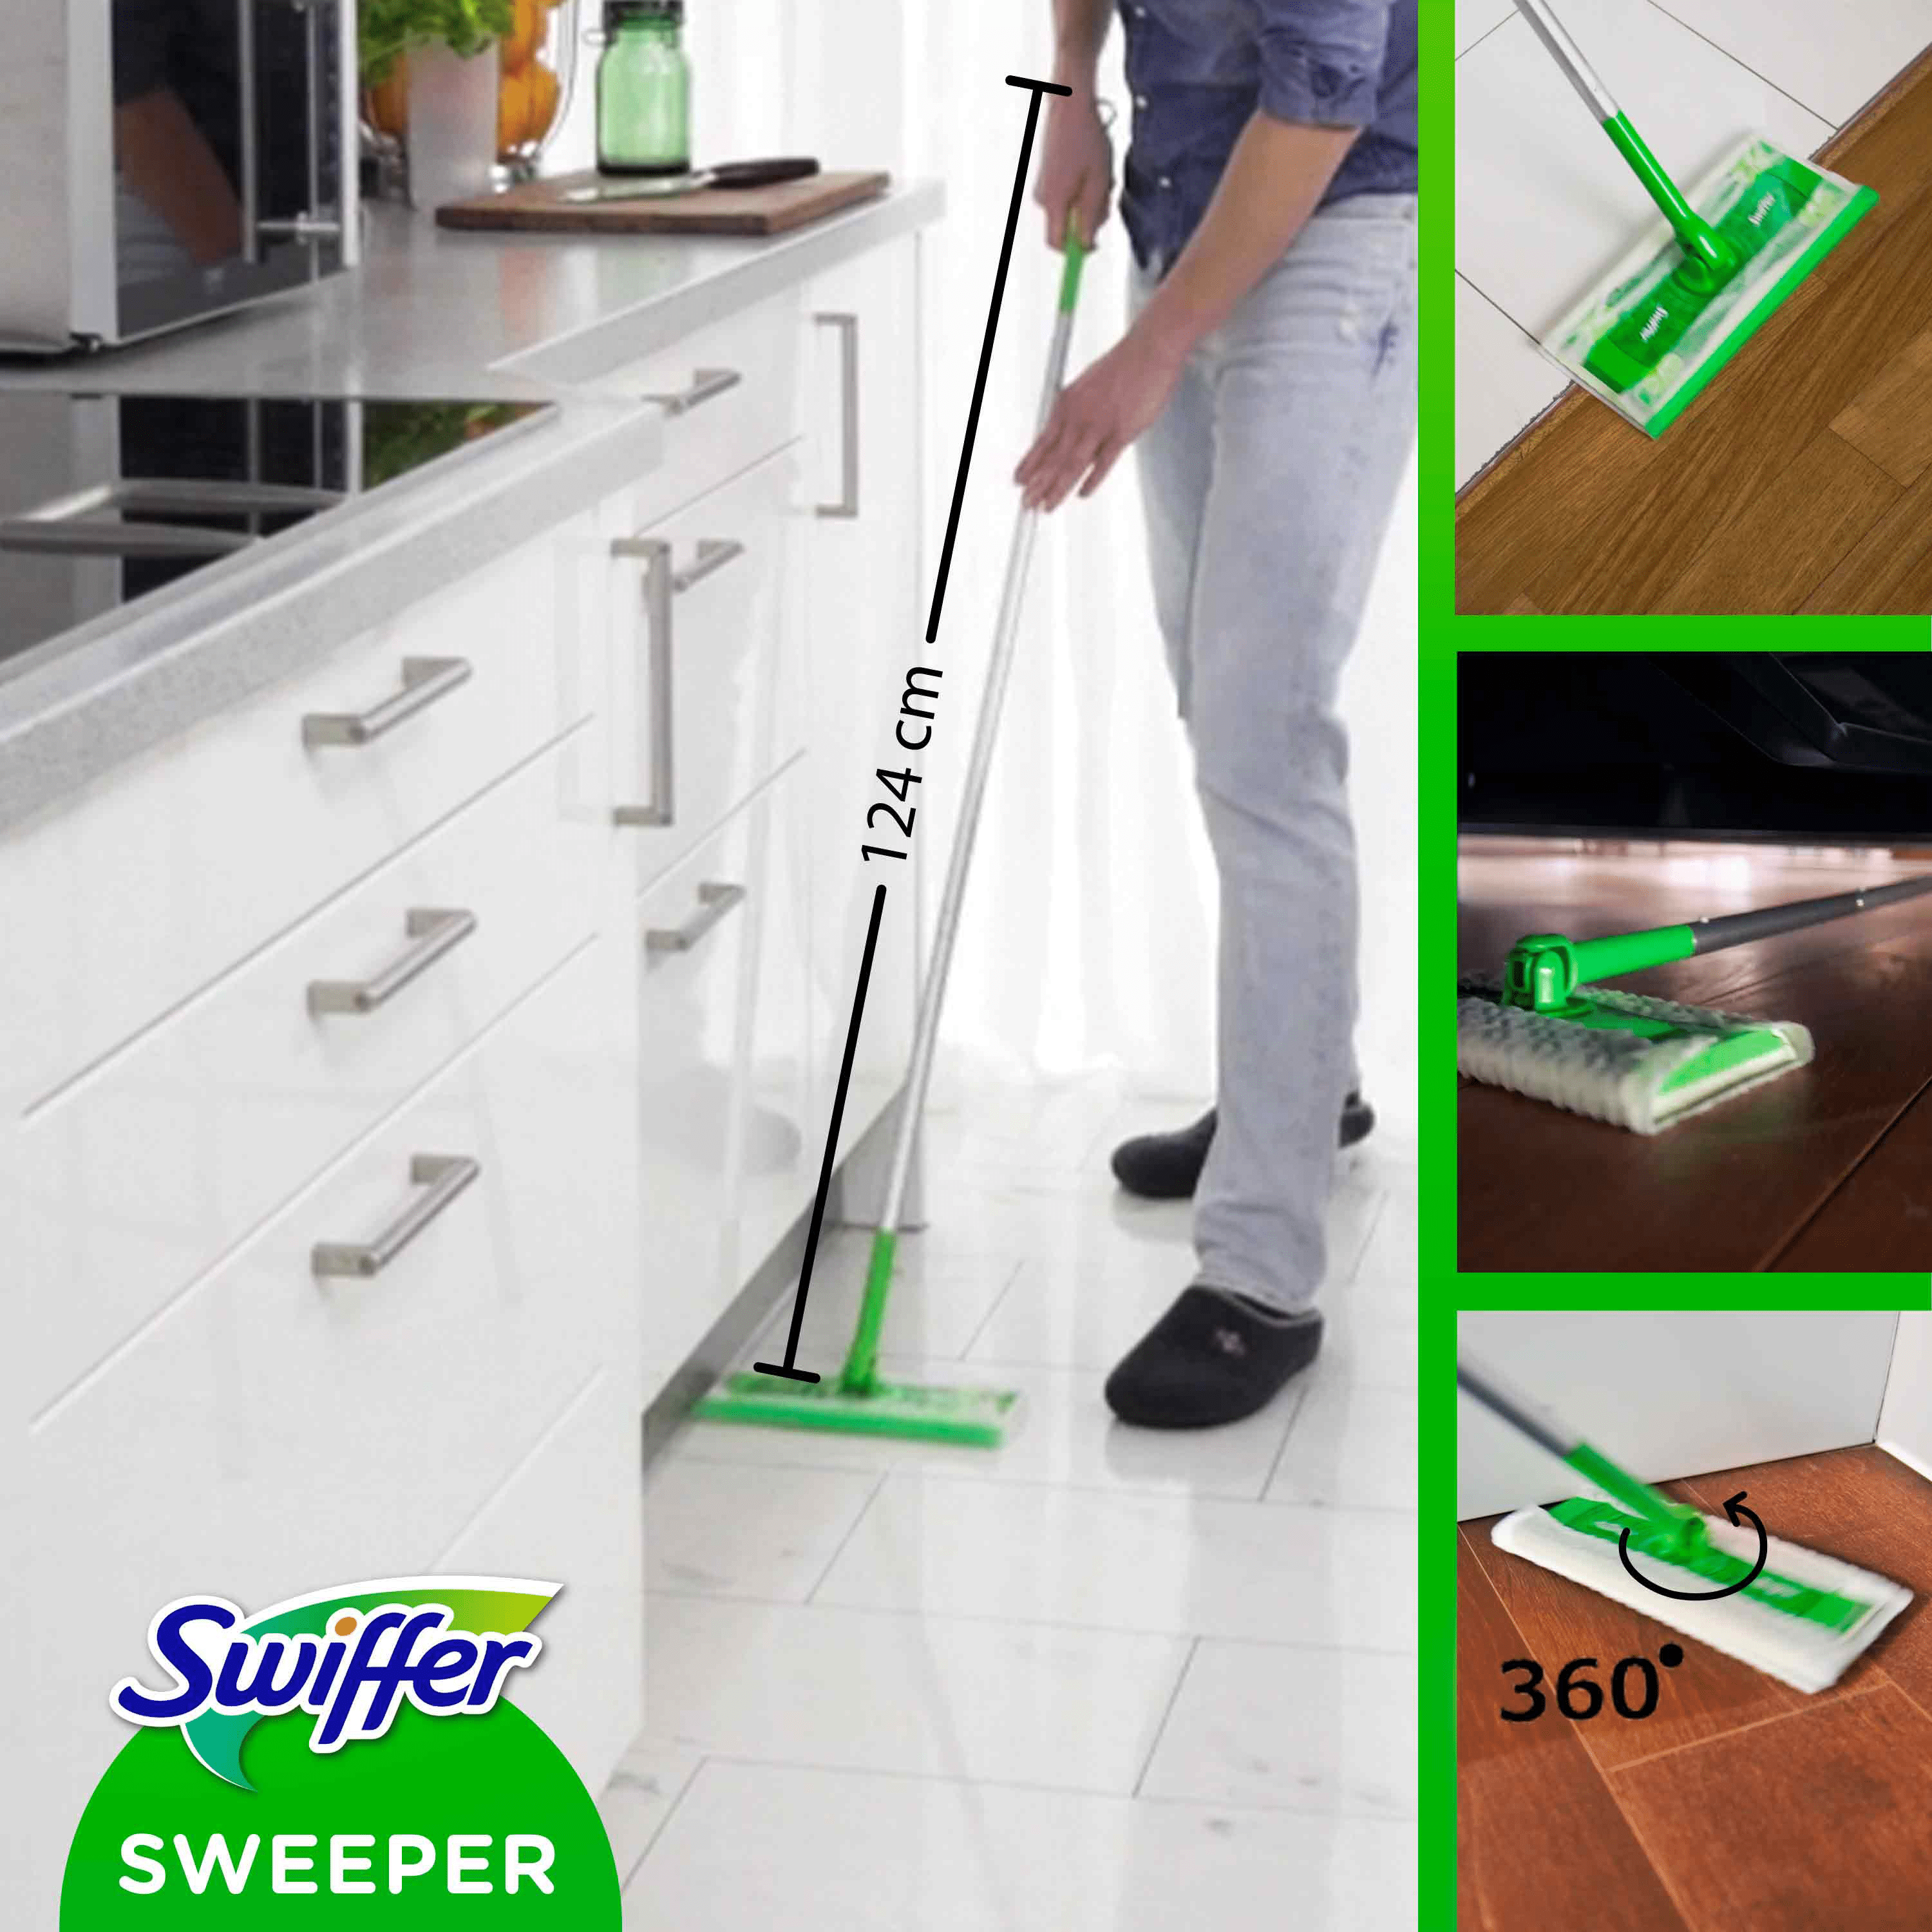 Swiffer kit de démarrage nettoyage des sols, vert, blanc 